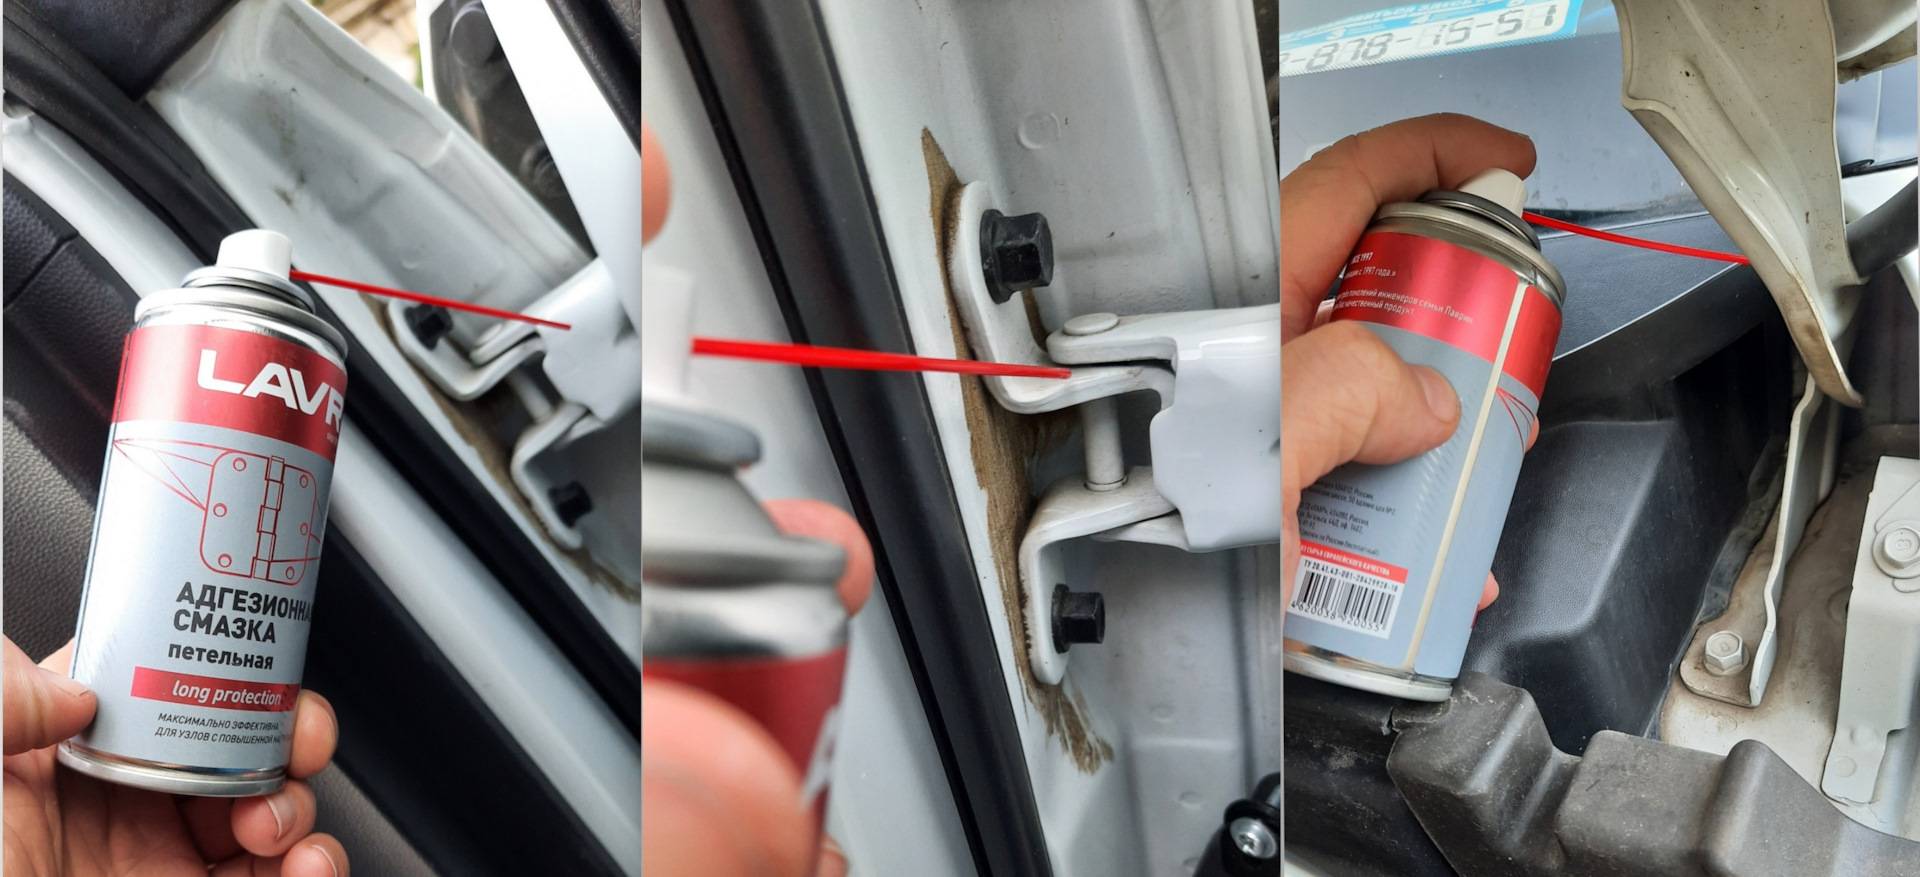 Скрипят двери в машине при открывании: причины скрипа и материалы, чем можно смазать